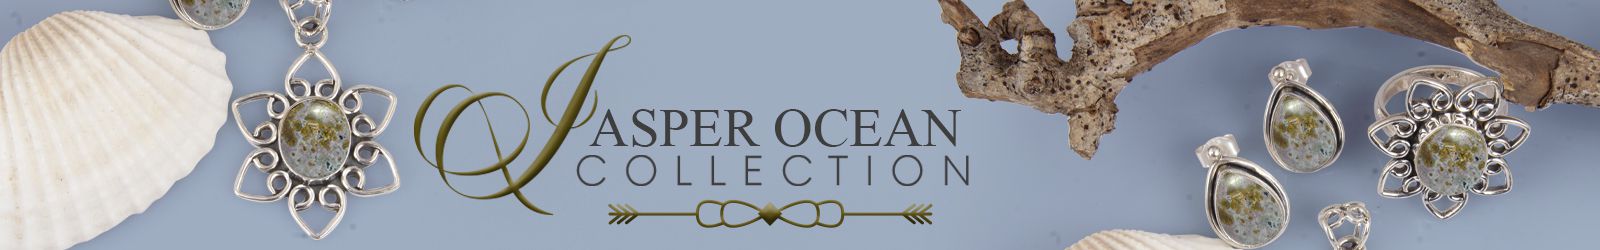 Silver Jasper Ocean Jewelry Wholesale Supplier